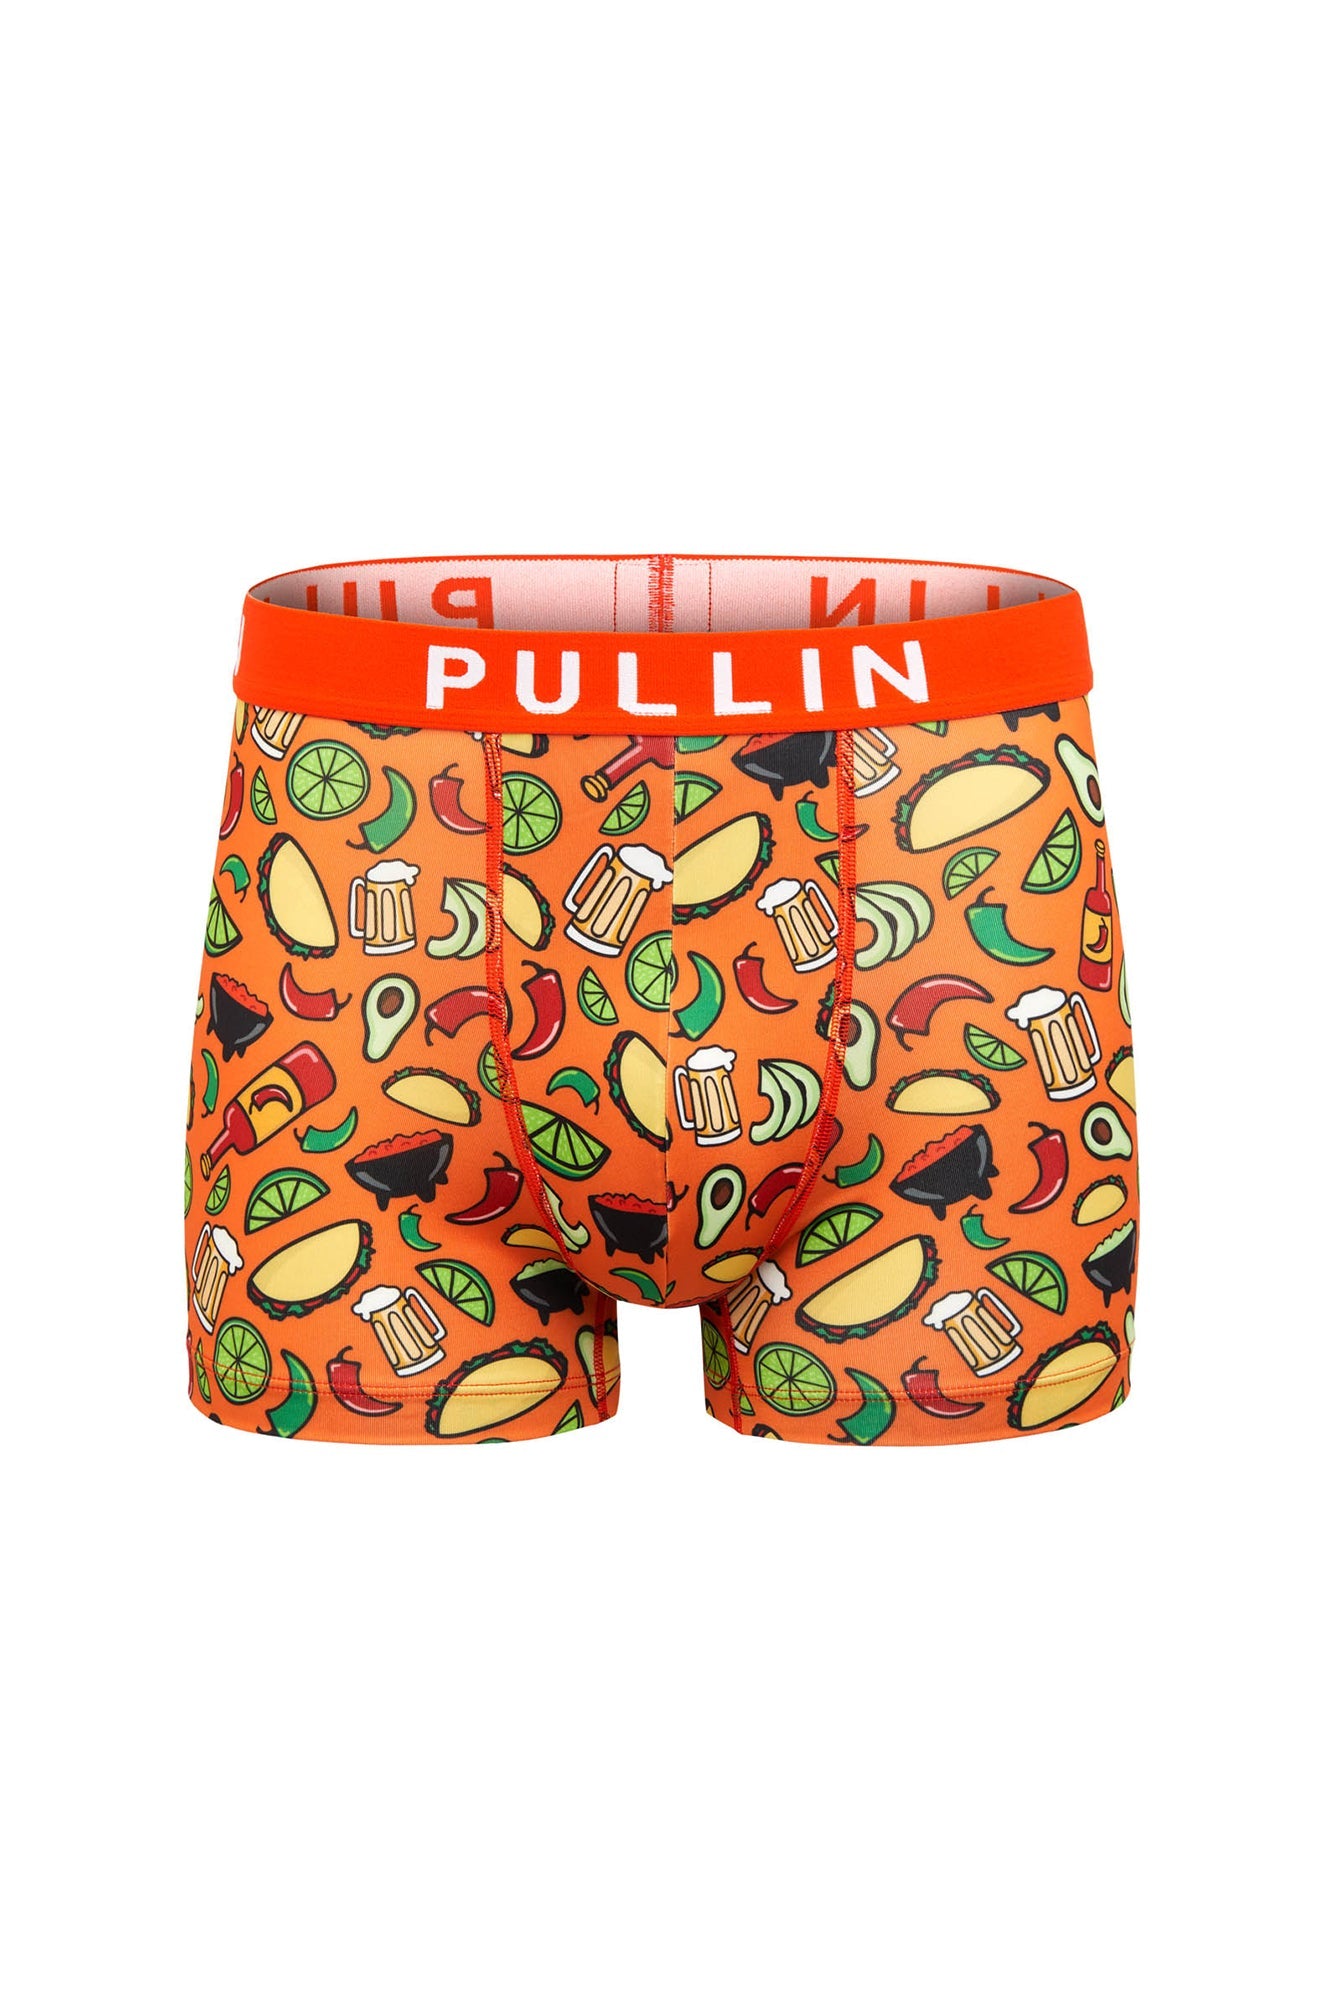 Pullin underwear | Mas Tacotime